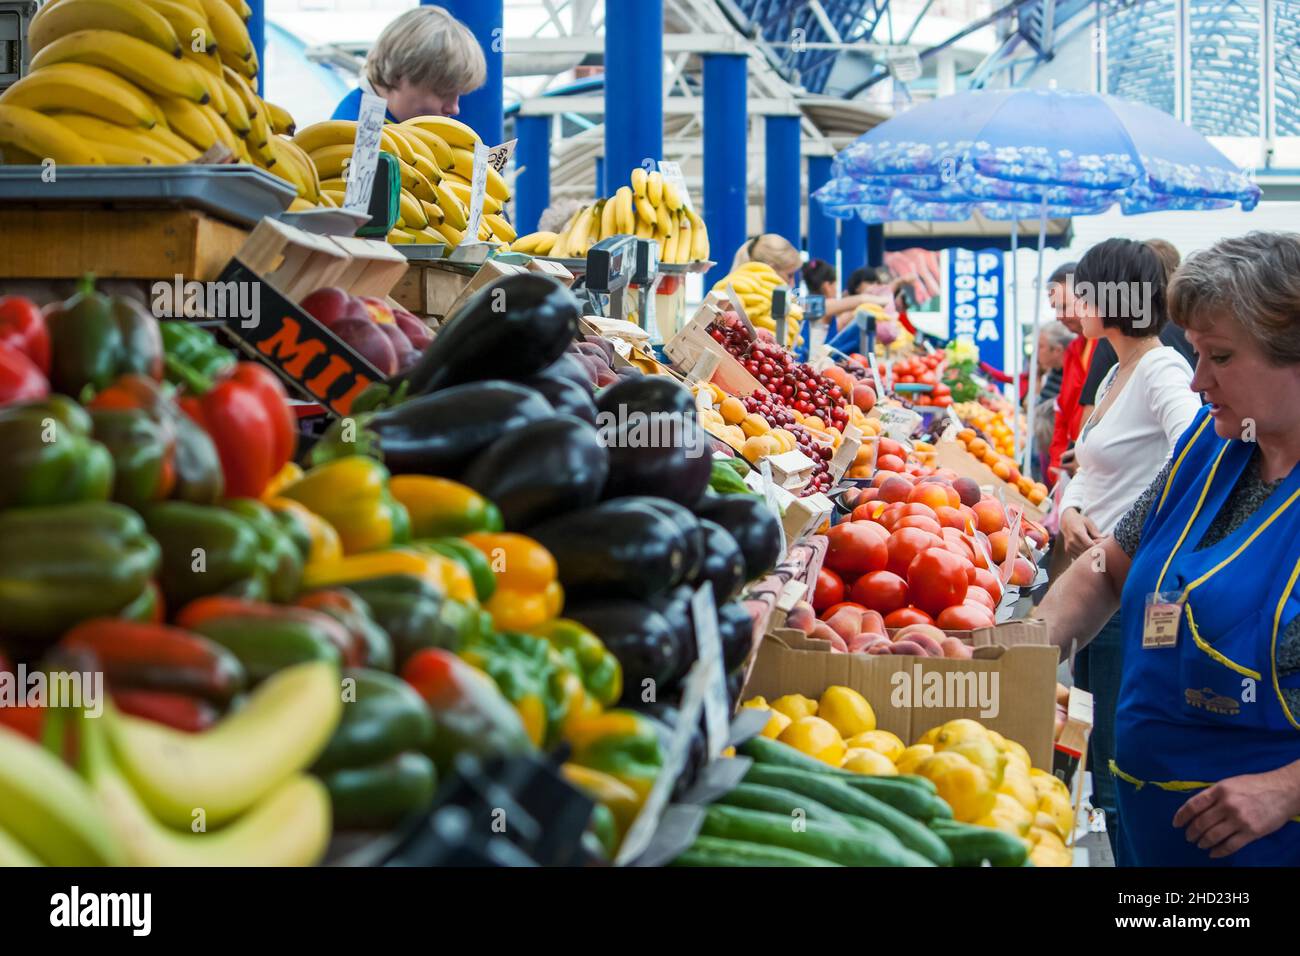 Minsk, Bélarus - 25 juin 2011 : négociation de lignes de marché de Komarovsky dans le centre de Minsk.Légumes, fruits.Les clients choisissent des marchandises. Banque D'Images